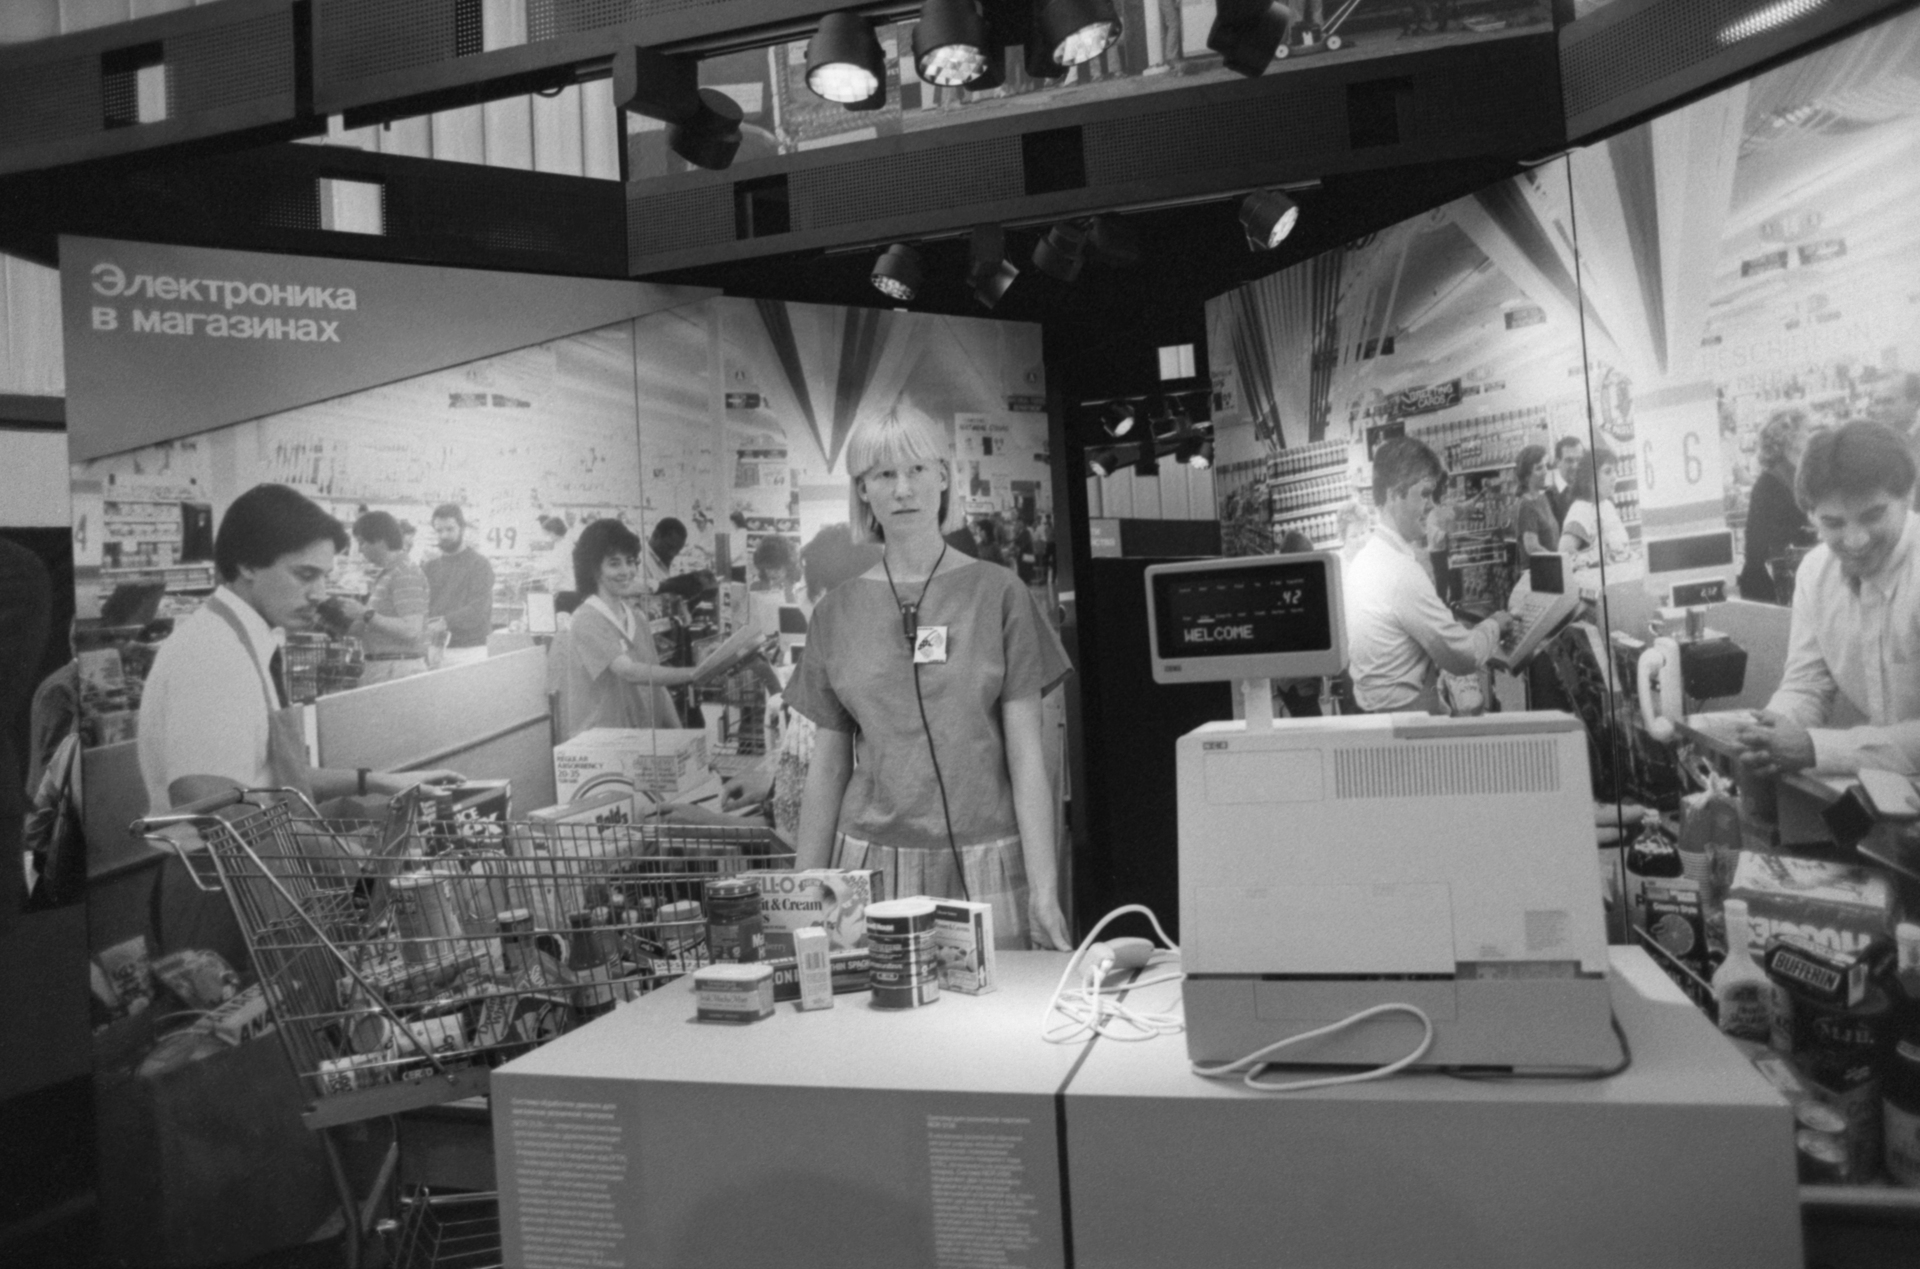 Москвичи вспомнили американскую выставку в СССР с компьютерами и рекламой KFC